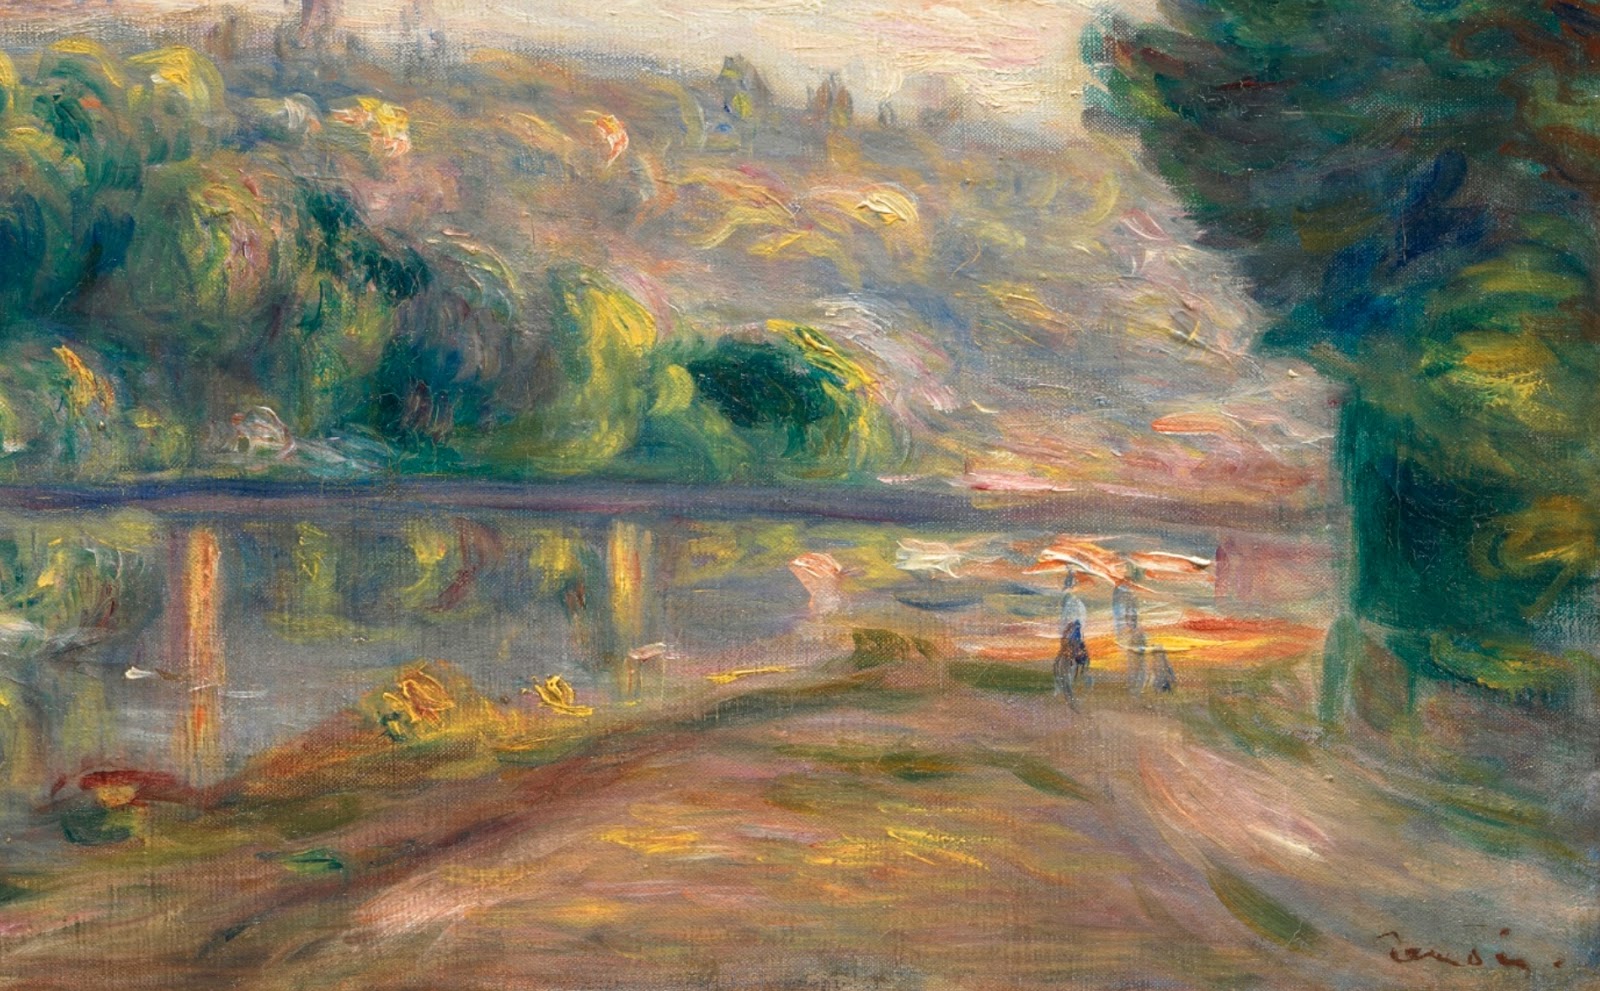 Pierre+Auguste+Renoir-1841-1-19 (826).jpg